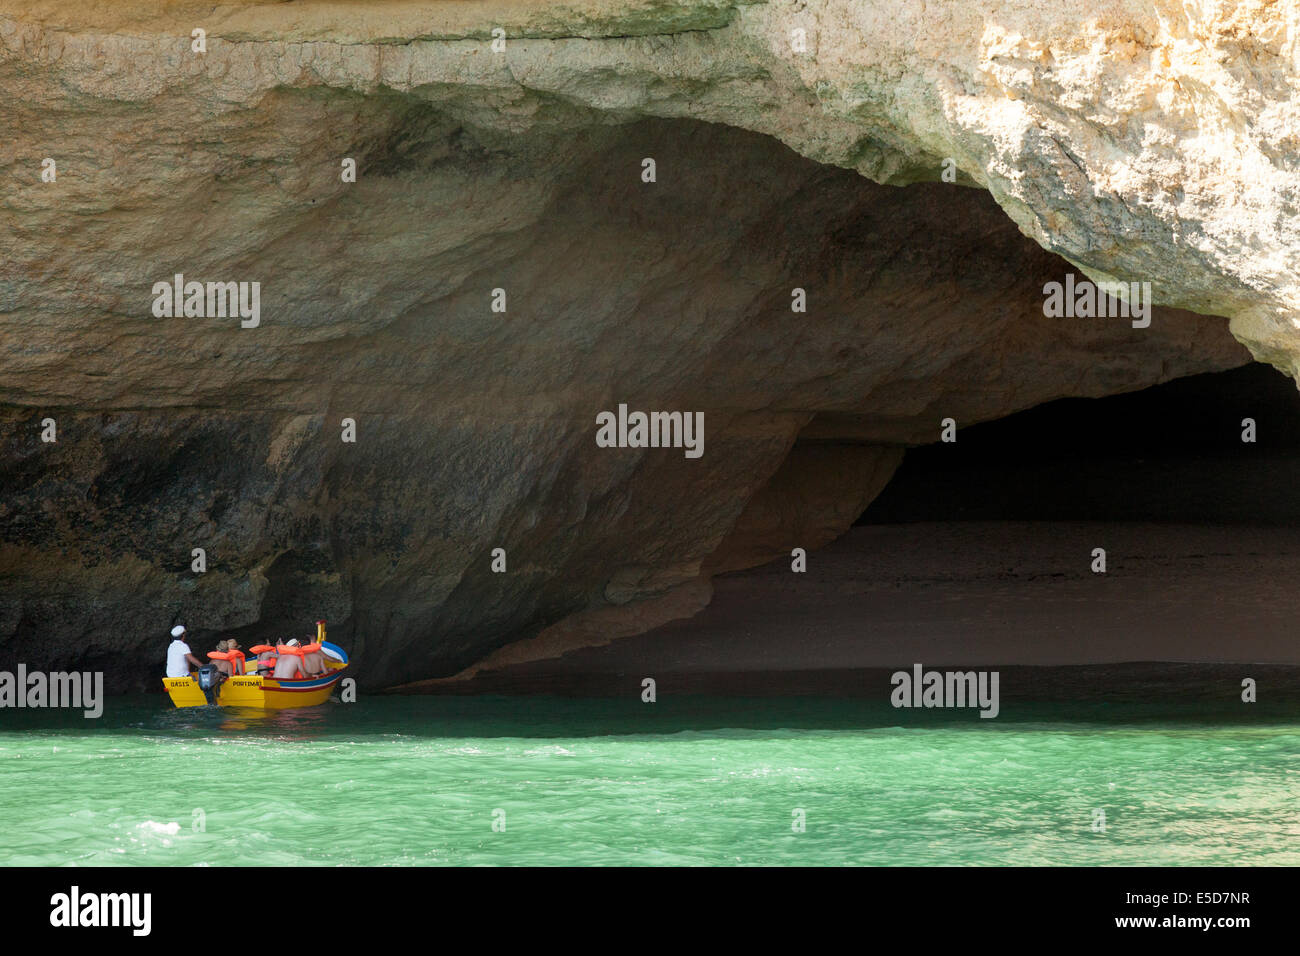 Le persone in vacanza visitando le grotte marine su una gita in barca, algarve costa vicino a Benagil, Portogallo, Europa Foto Stock